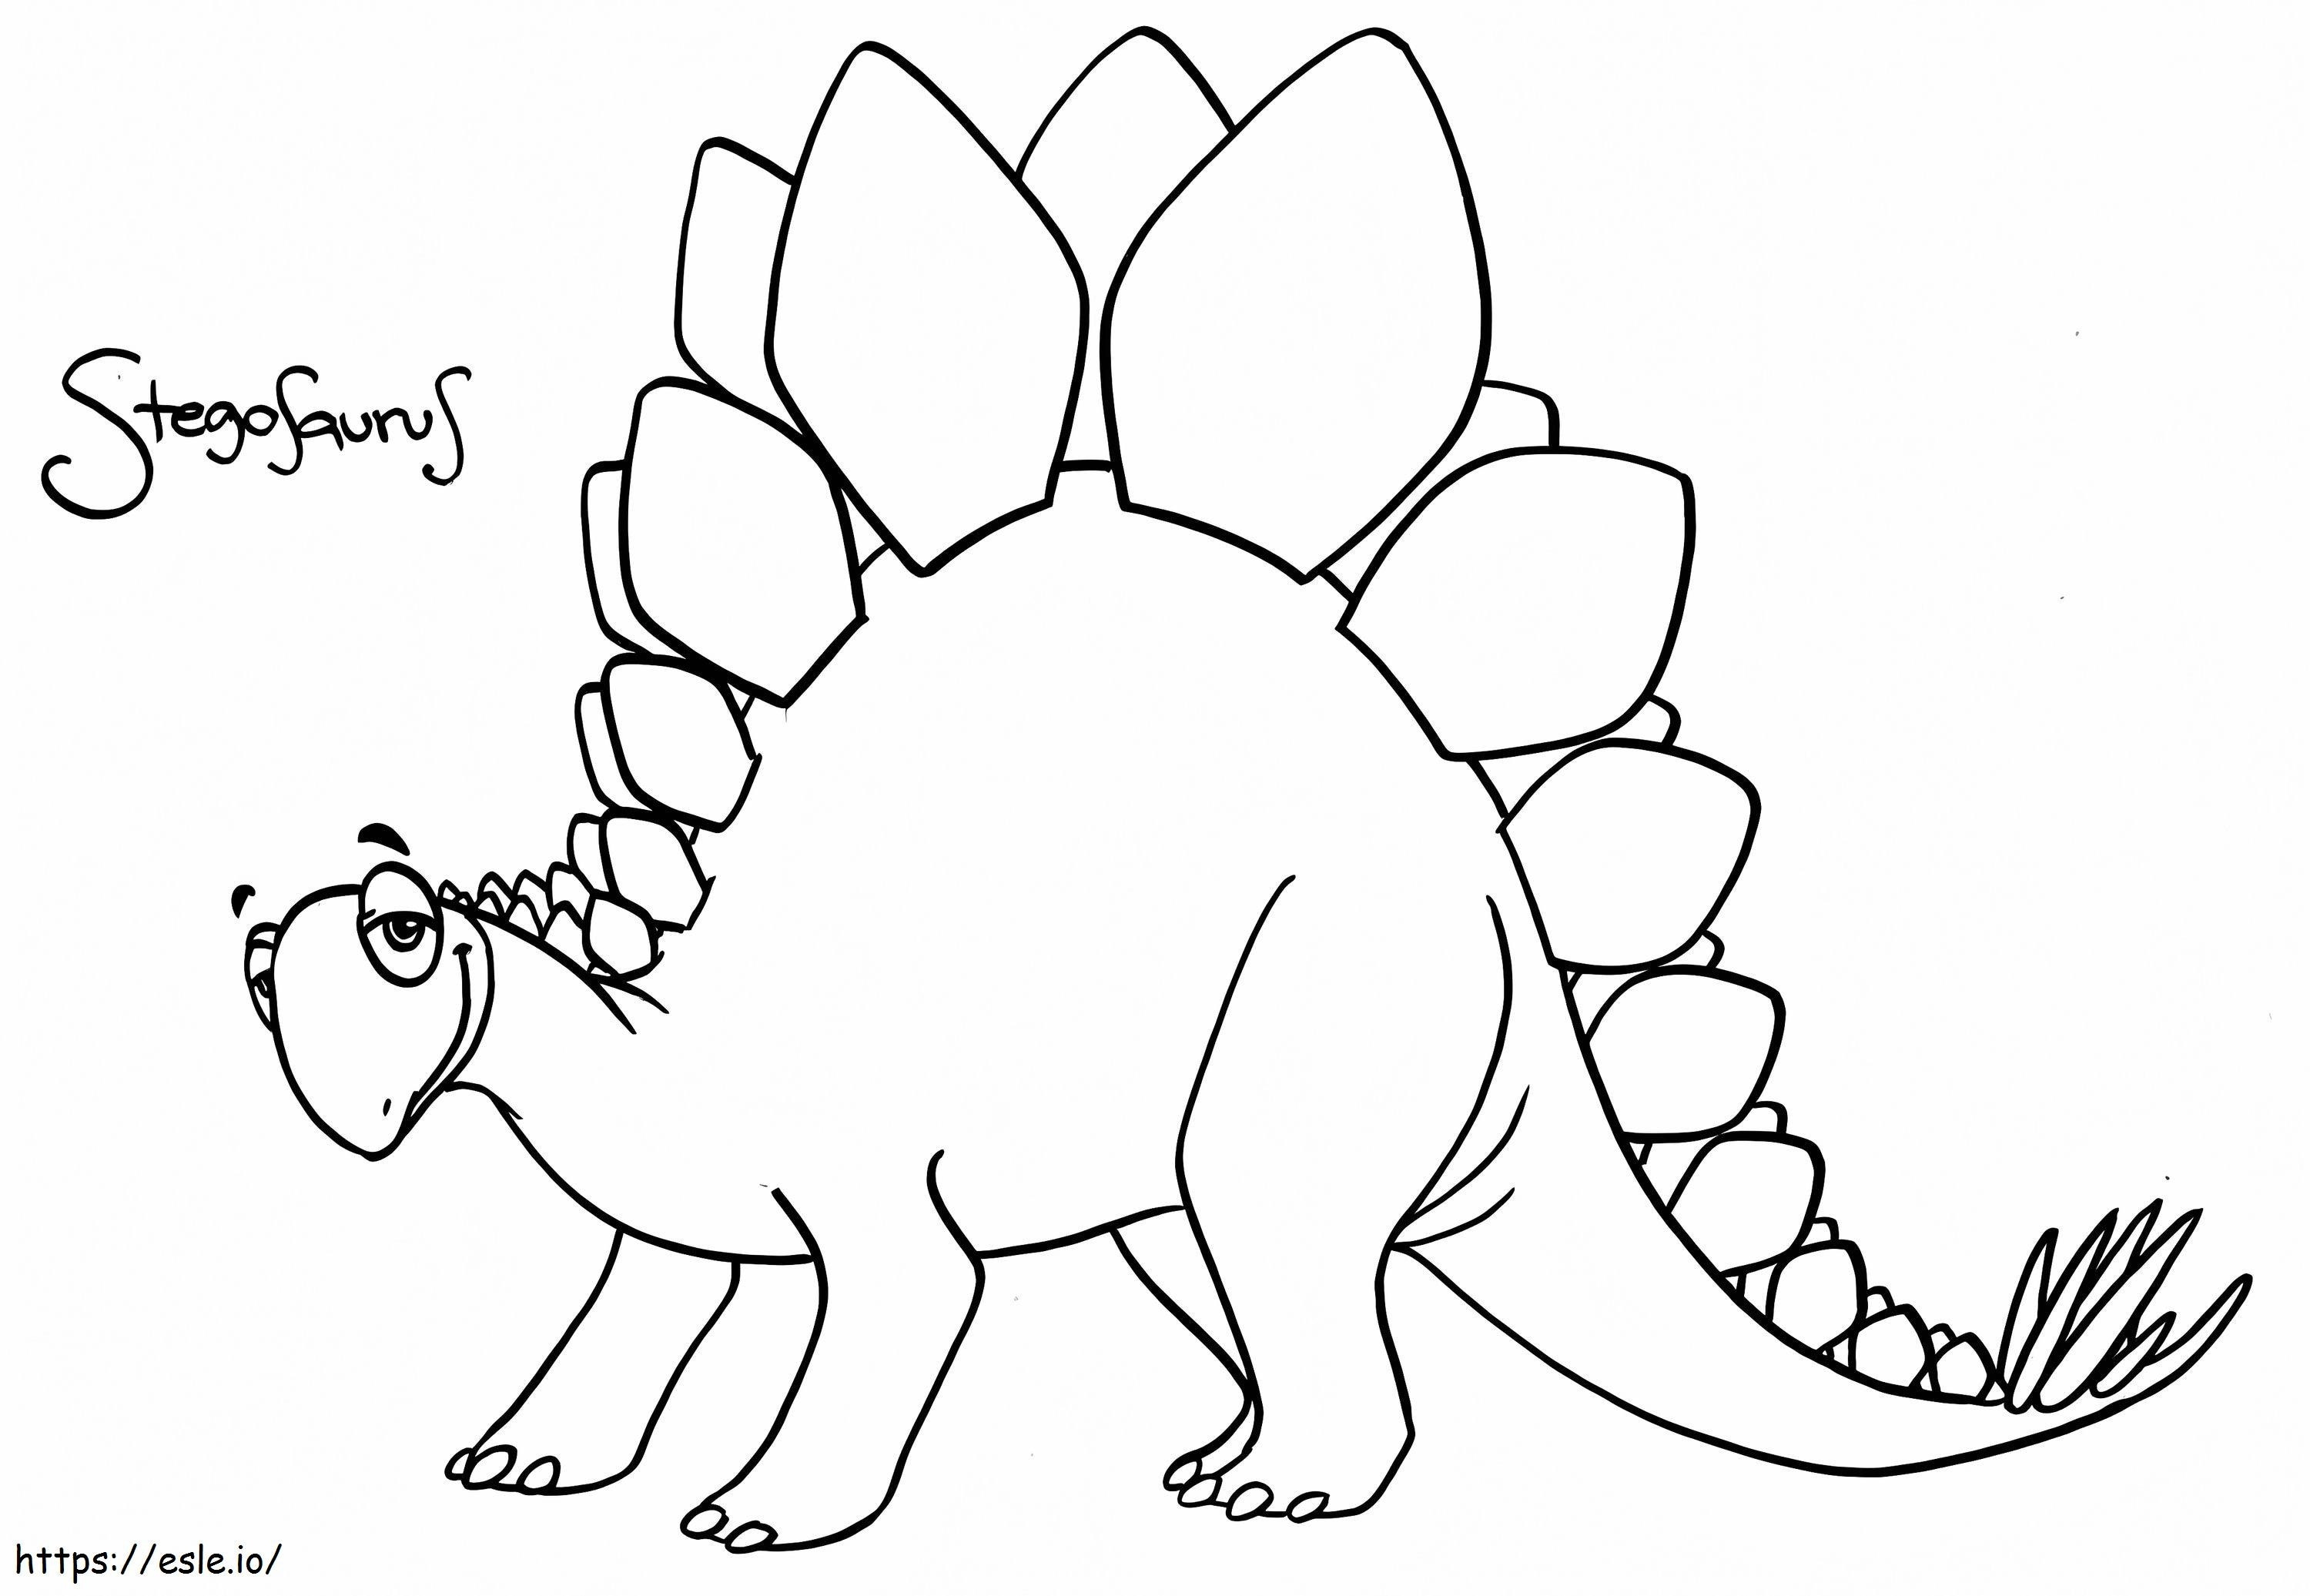 Mosolygó Stegosaurus kifestő